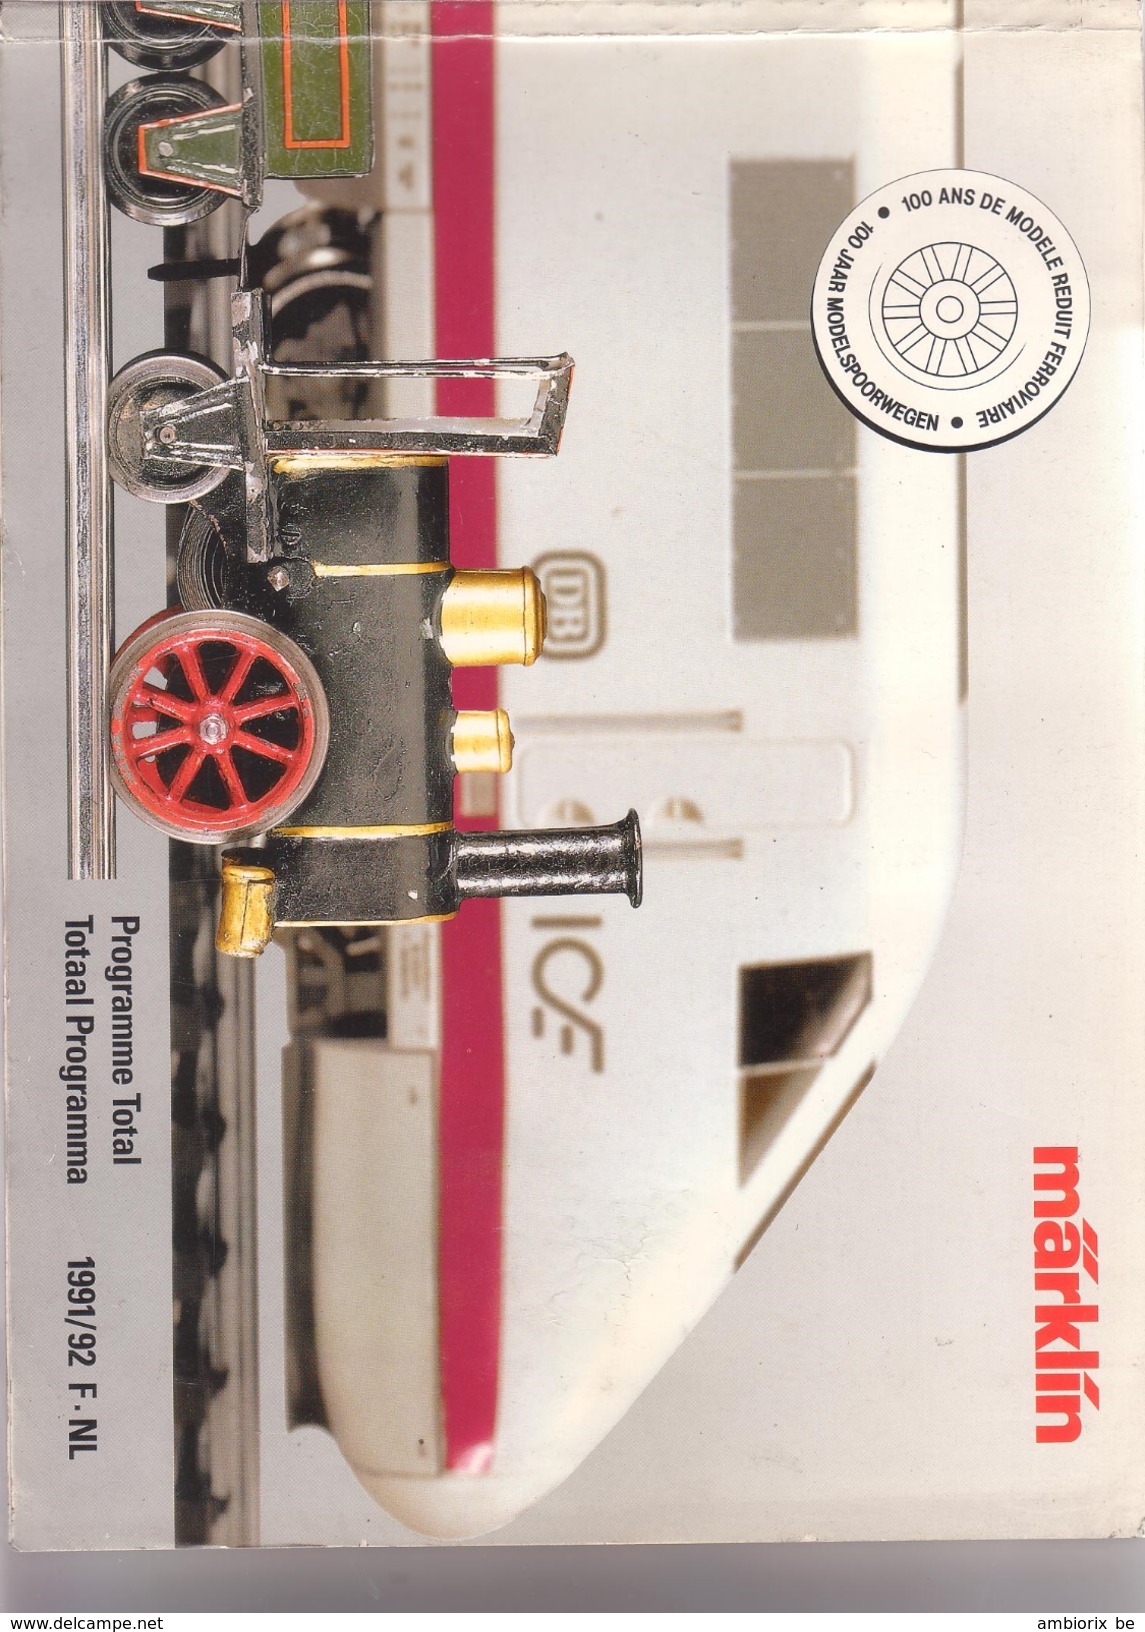 Marklin - Catalogue 1991-92 - Französisch